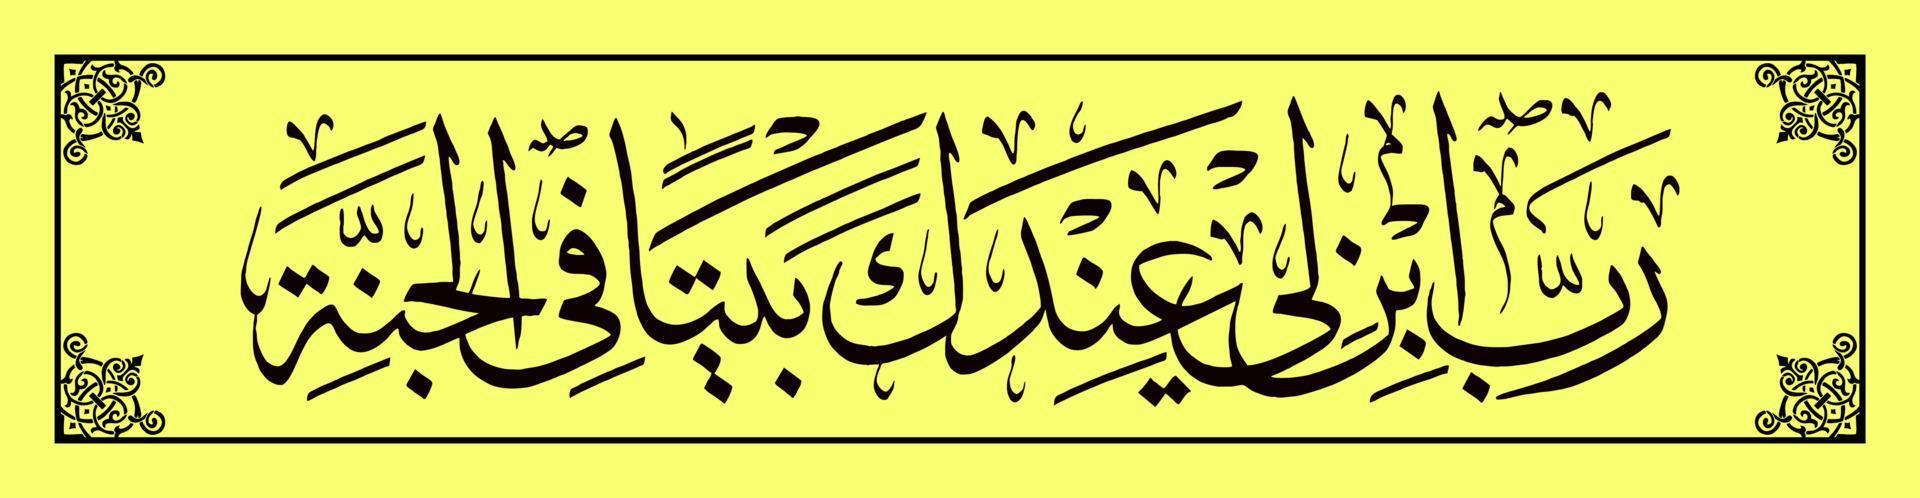 caligrafía árabe, al qur'an surah en tahrim 11 traducción es suficiente oh mi señor, construye para mí una casa a tu lado en el cielo. vector